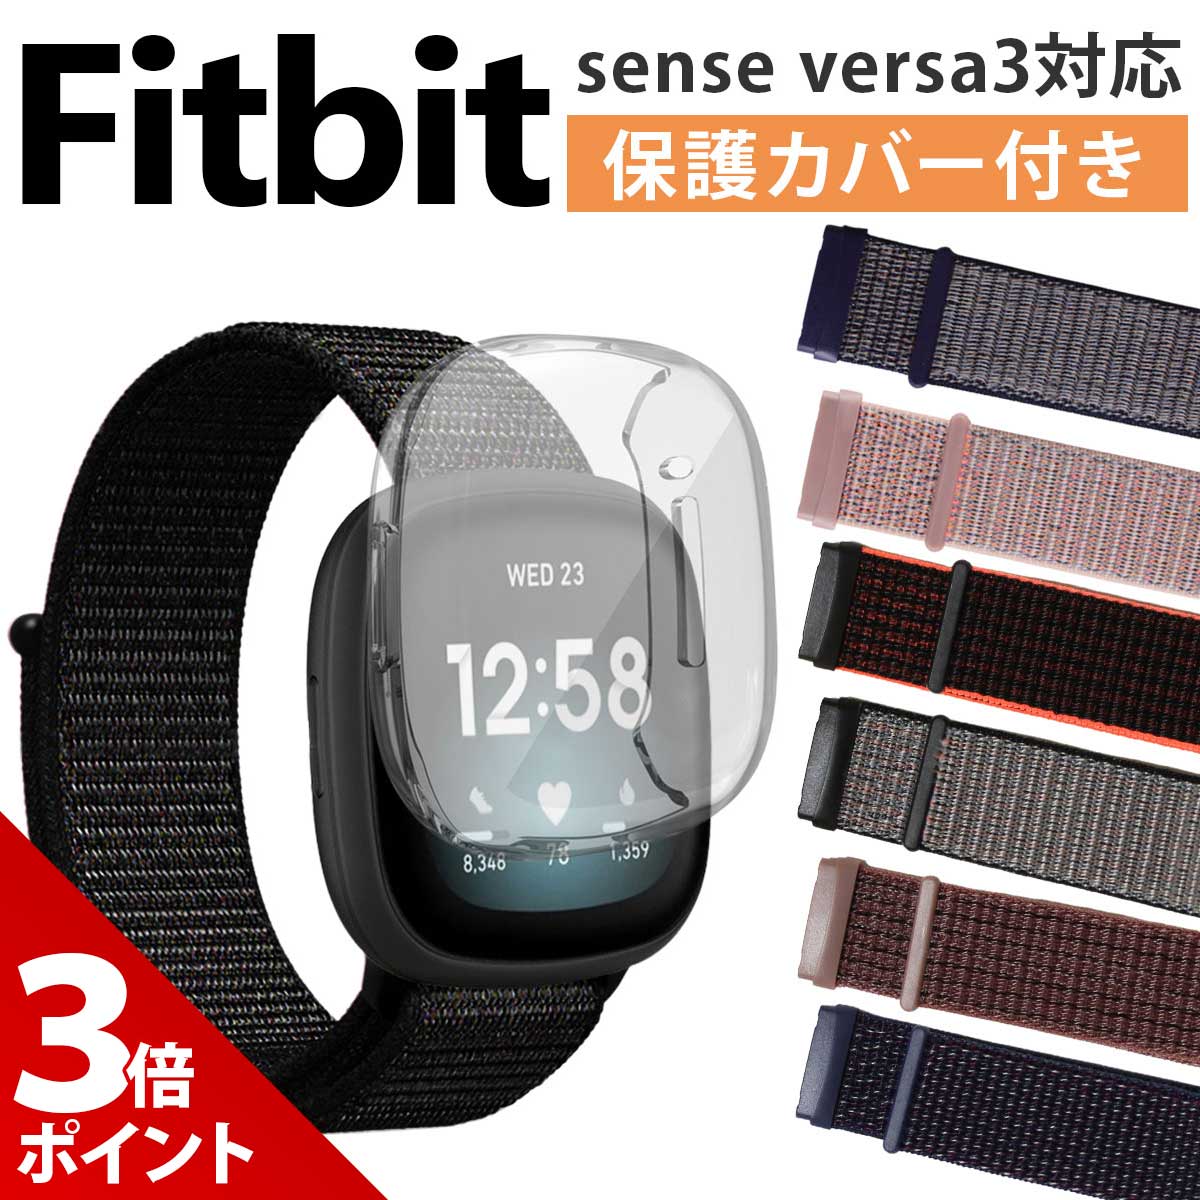 【保護カバーセット】Fitbit sense versa